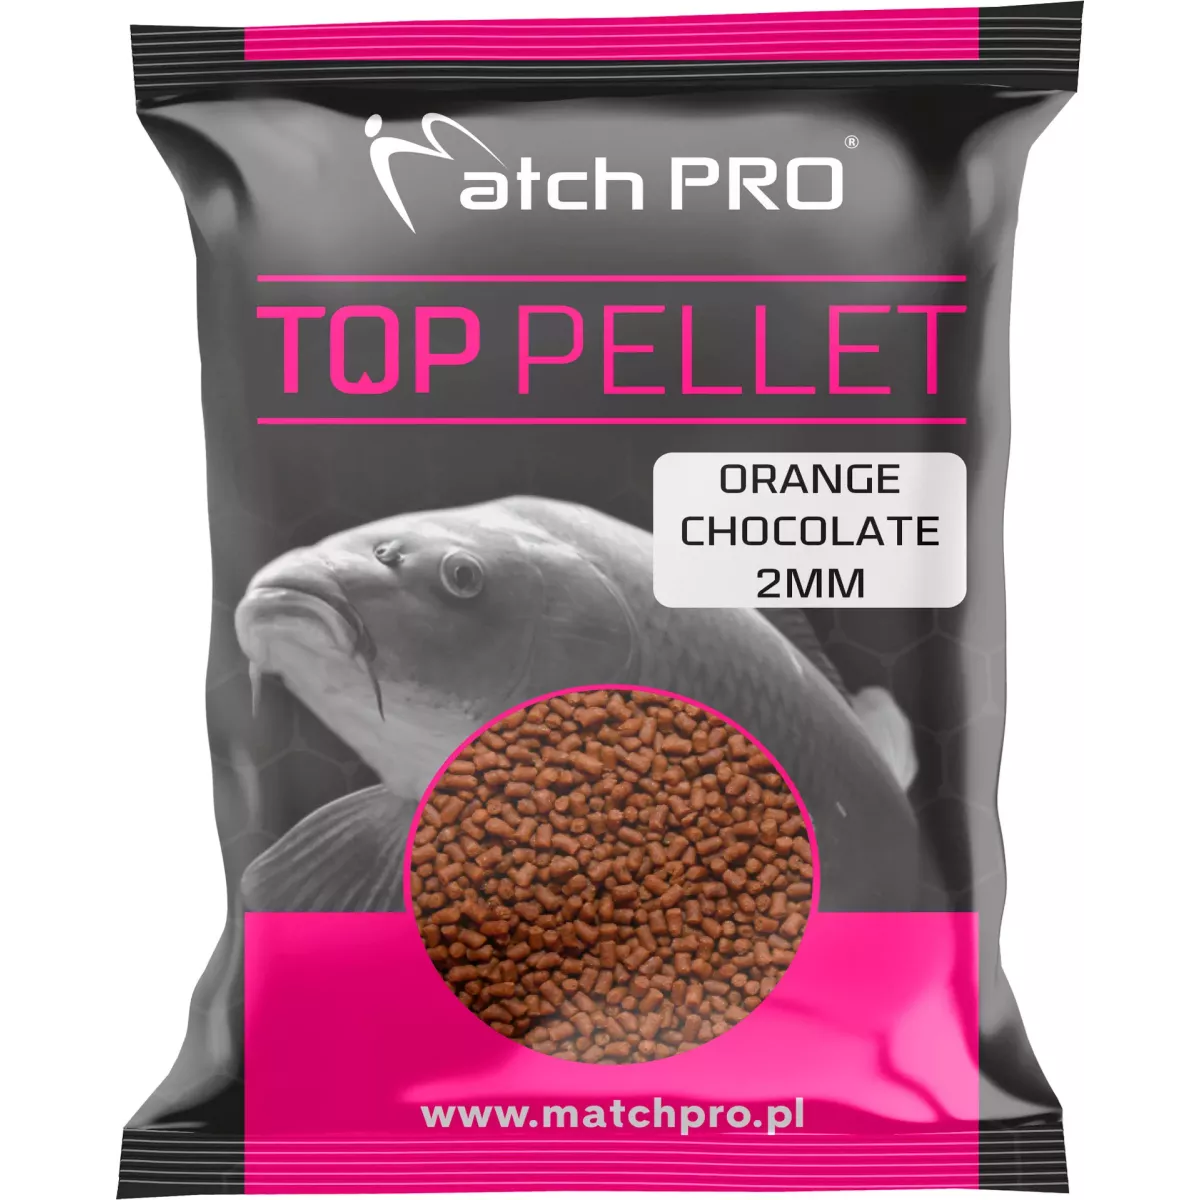 Pellet MatchPro TOP 2mm - ORANGE CHOCOLATE